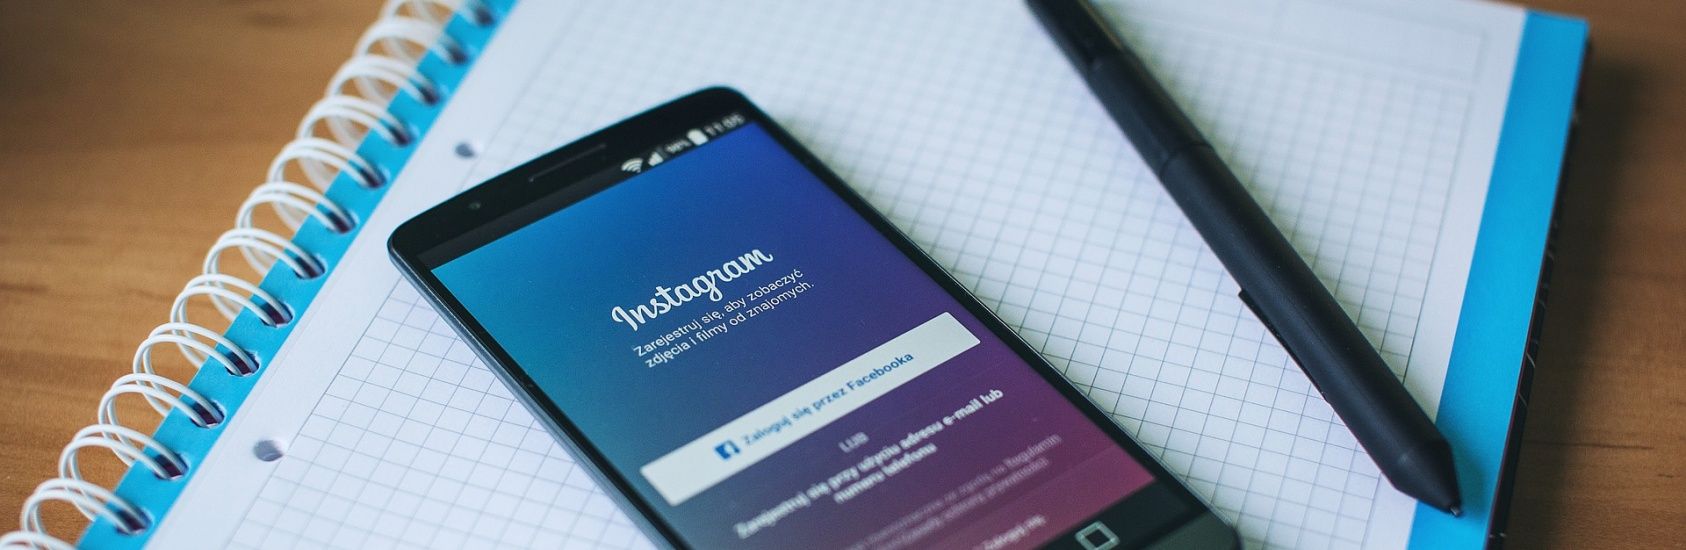 Consejos para mejorar tu contenido en Instagram